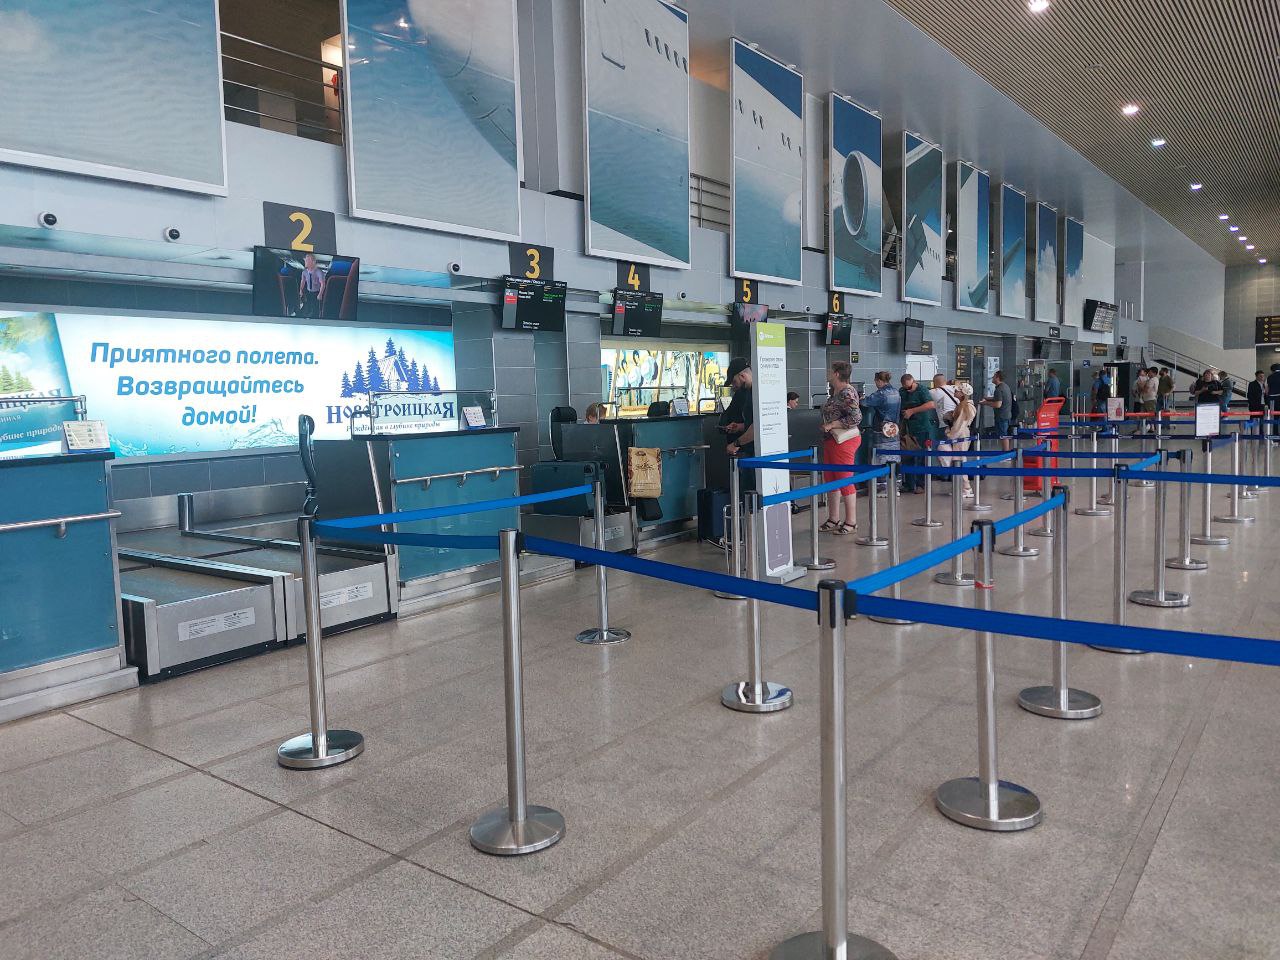 Аэропорт Благовещенск предоставит бесплатное обслуживание семьям погибших и пострадавших в Подмосковье